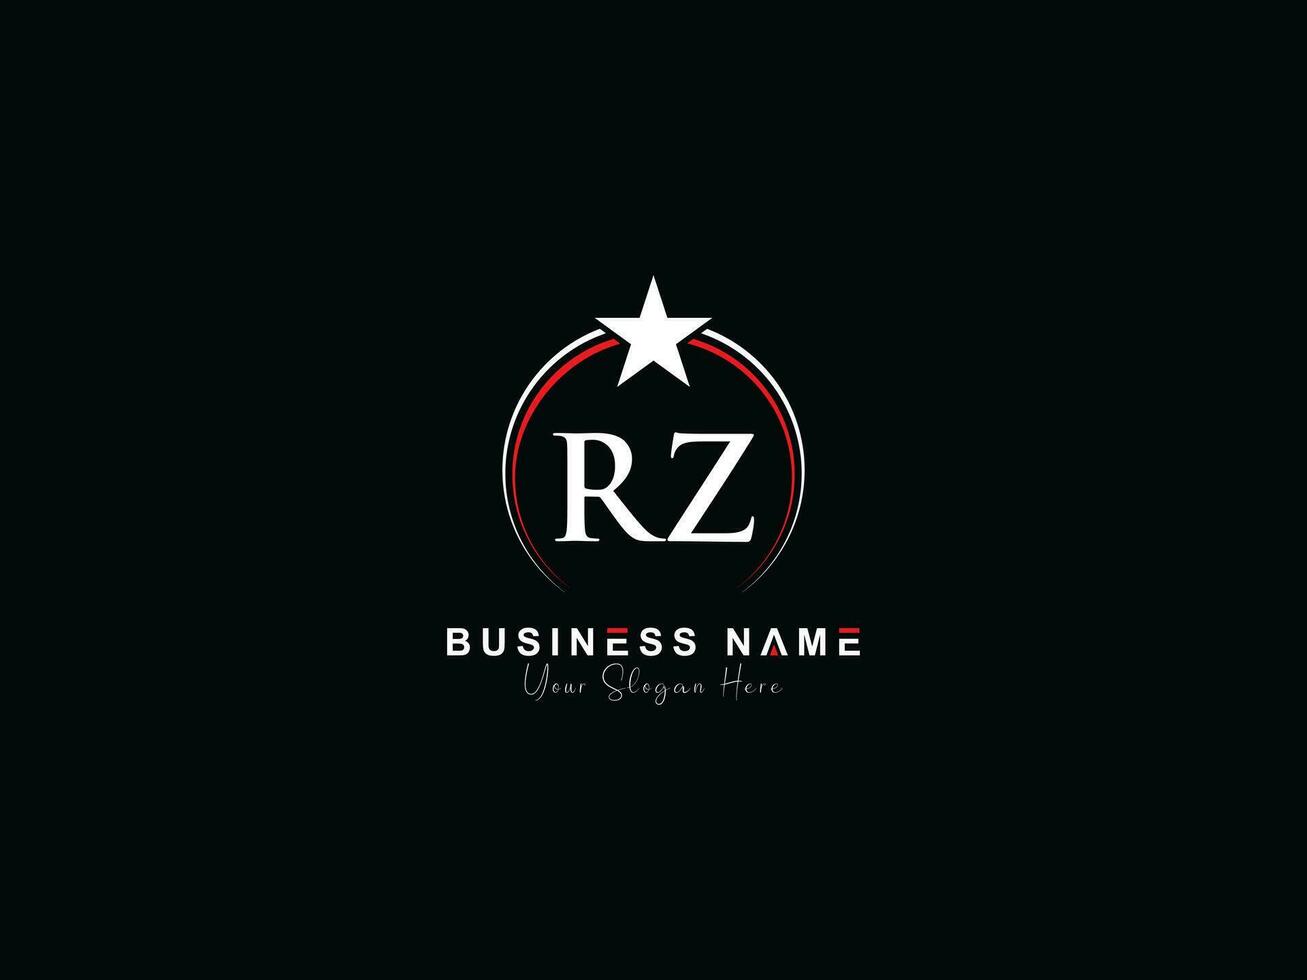 real estrella rz circulo logo, minimalista lujo rz logo letra vector